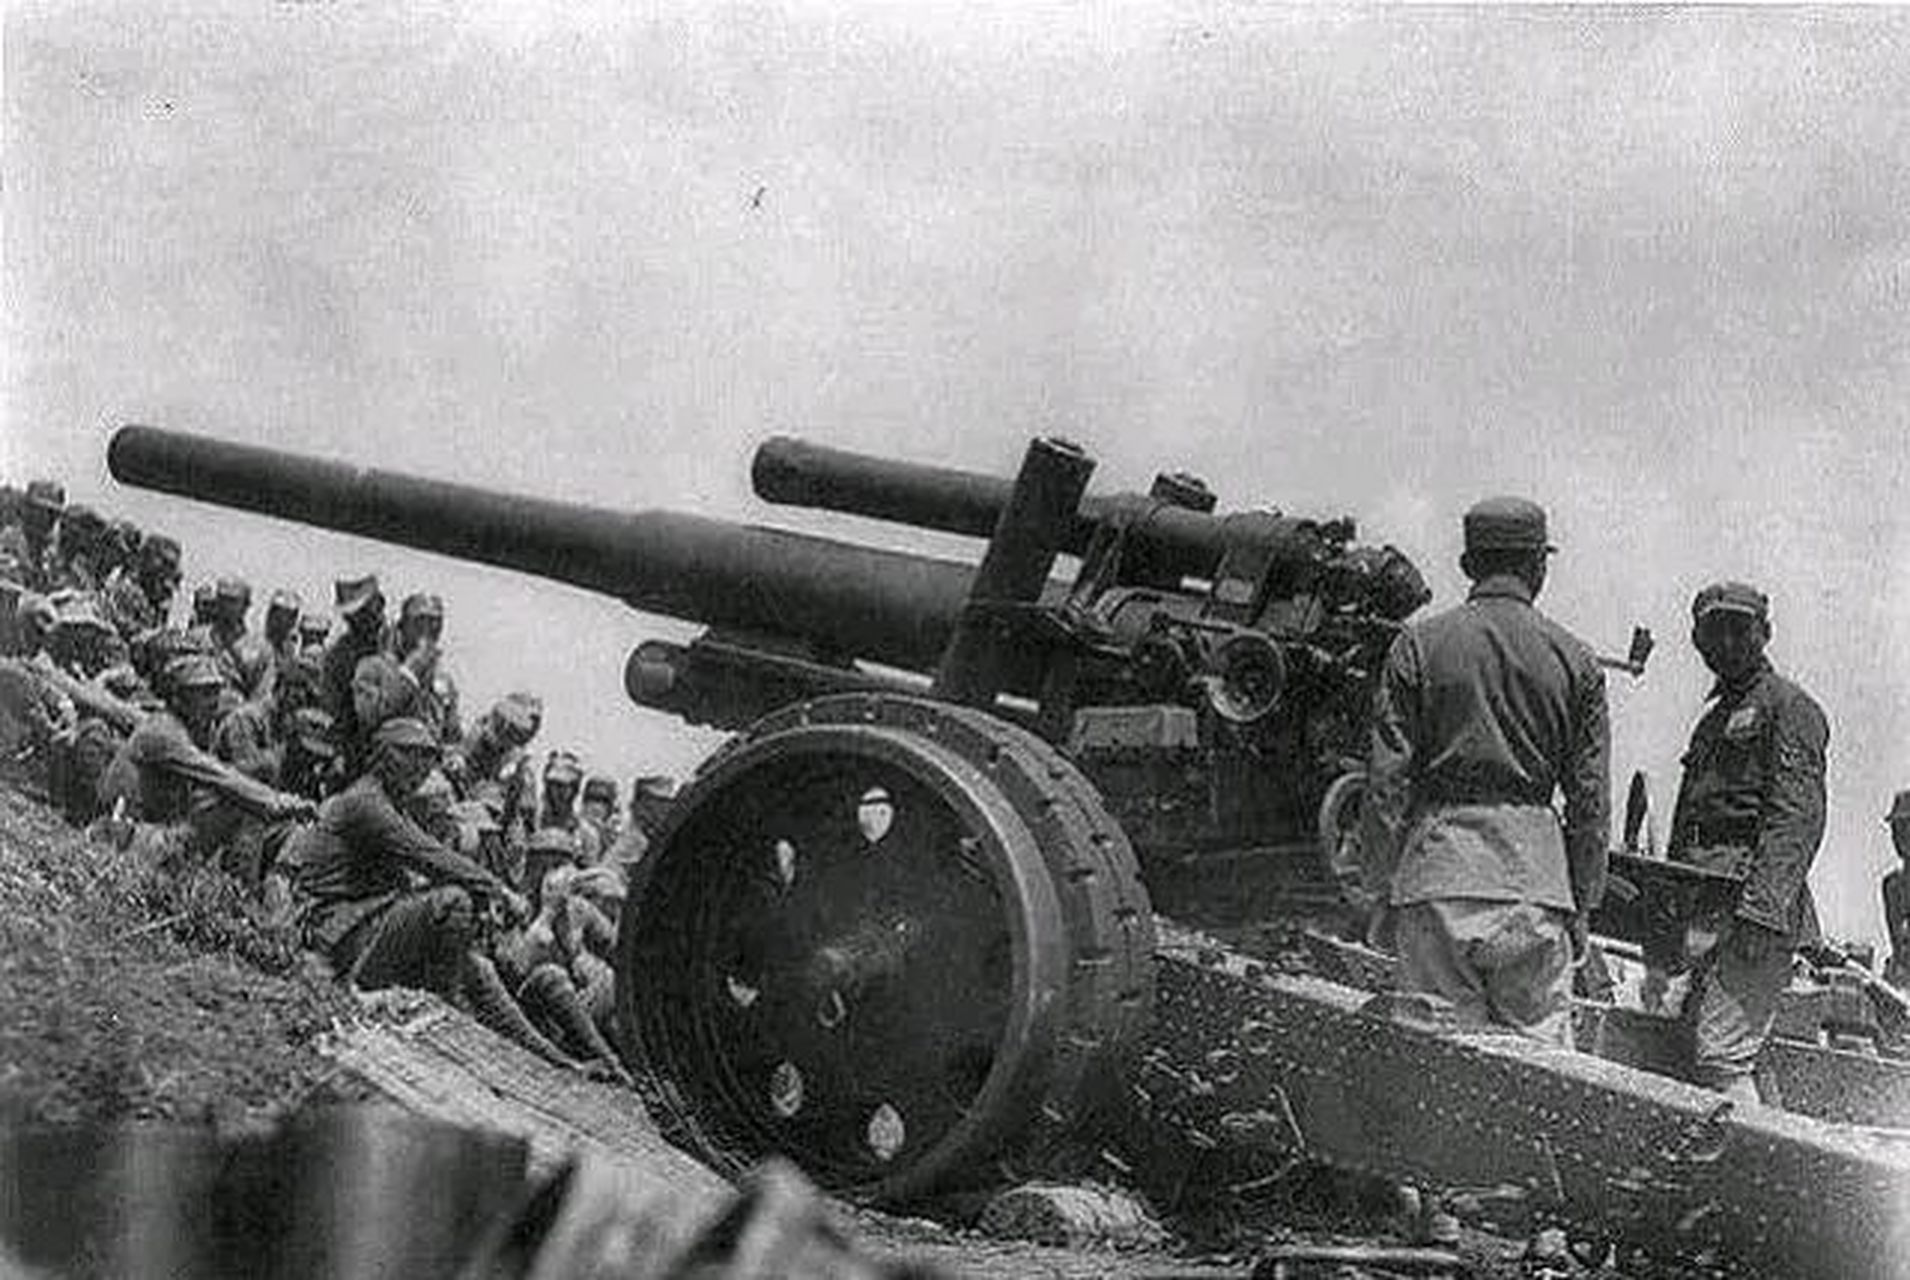 sfh18榴弹炮,是德国二战时期的主力火炮,1930年代初完成研发工作,底盘